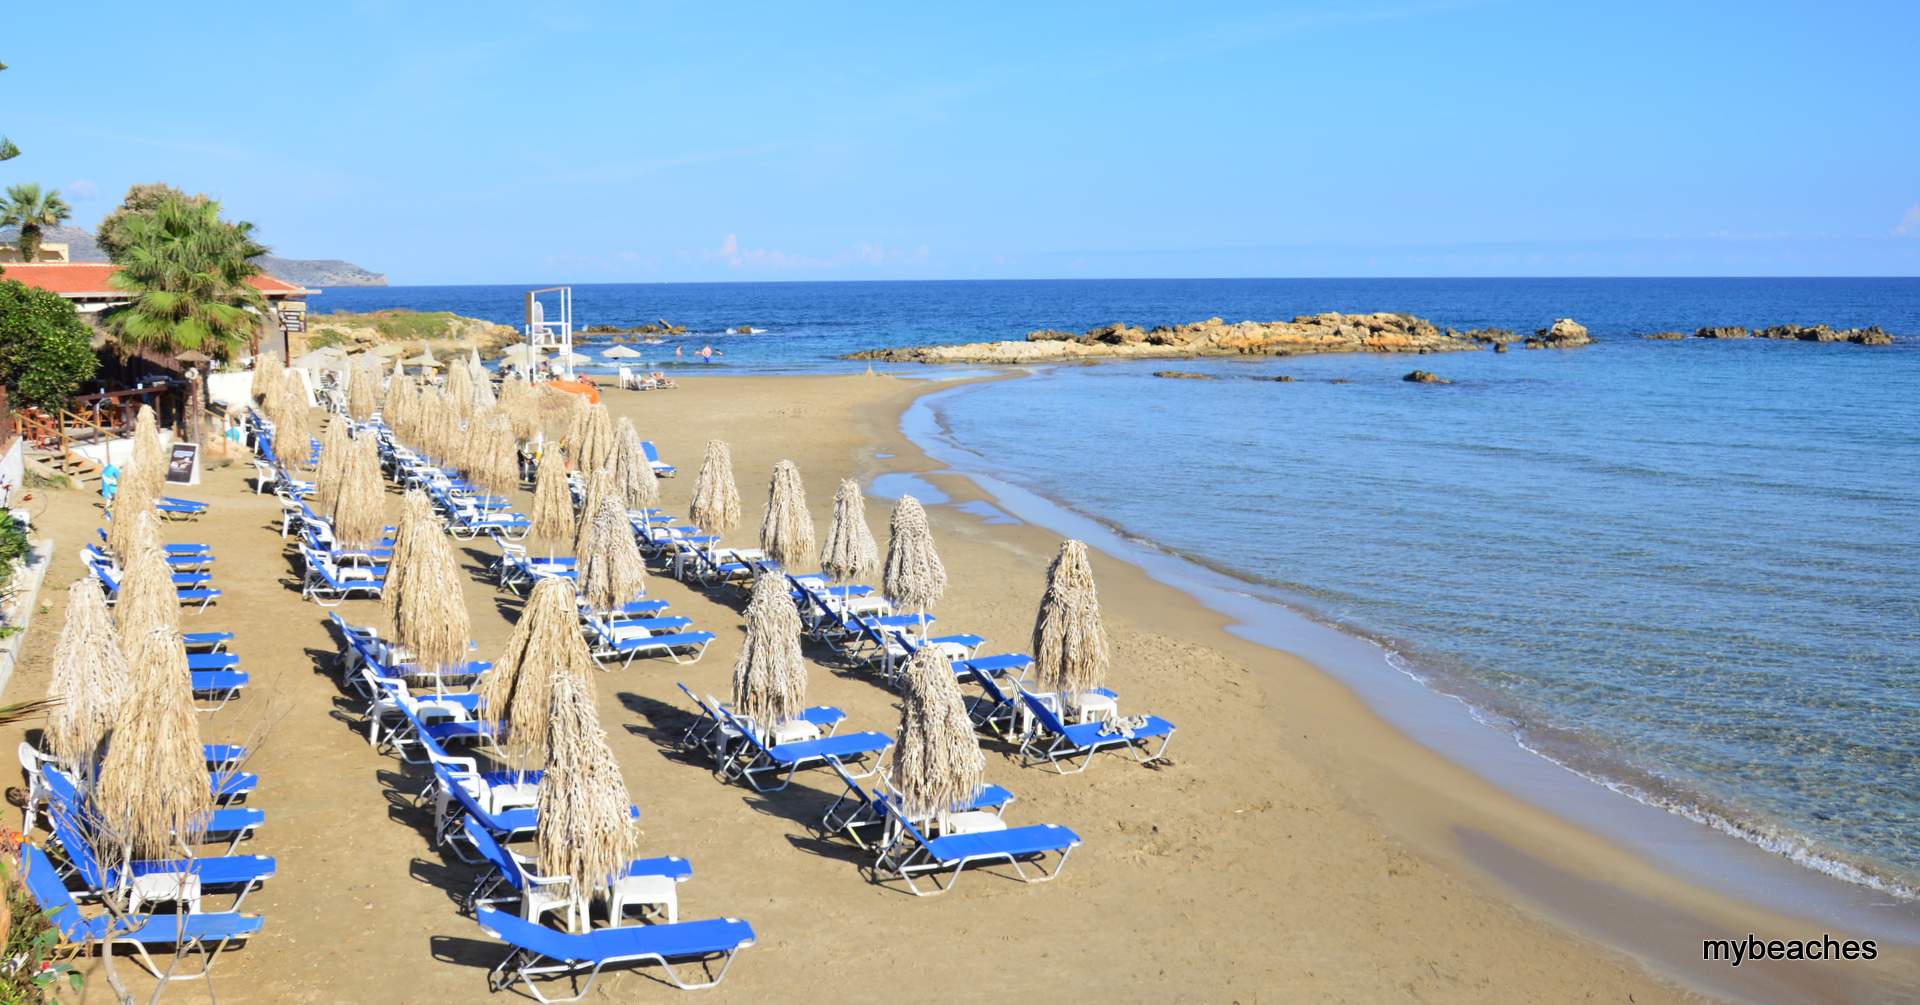 Καλαμάκι παραλία, Χανιά, Κρήτη, Ελλάδα